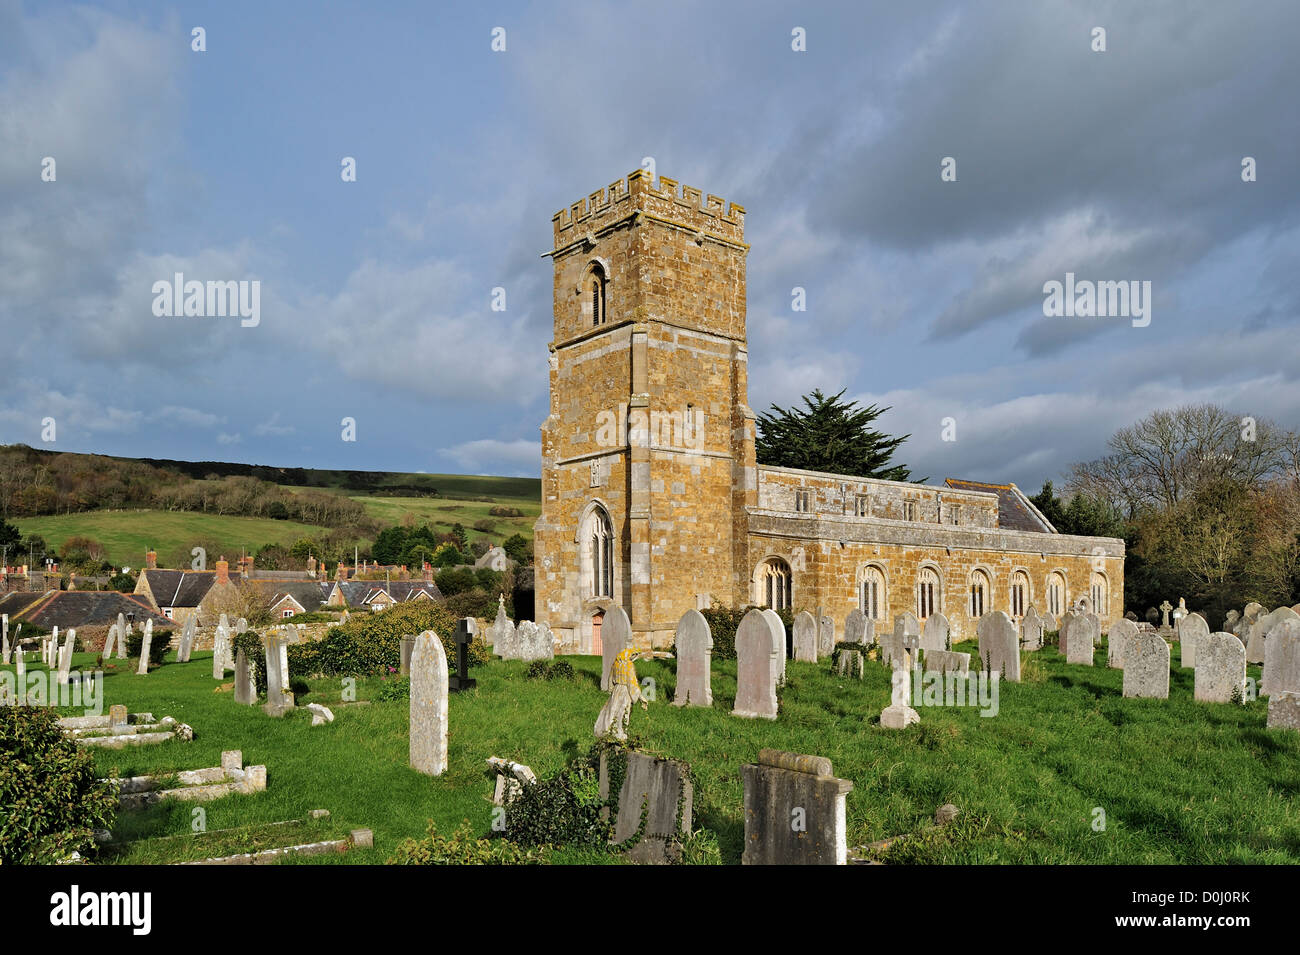 Tombes anciennes au cimetière de l'église paroissiale de St Nicholas à Abbotsbury le long de la Côte Jurassique, Dorset, dans le sud de l'Angleterre, Royaume-Uni Banque D'Images